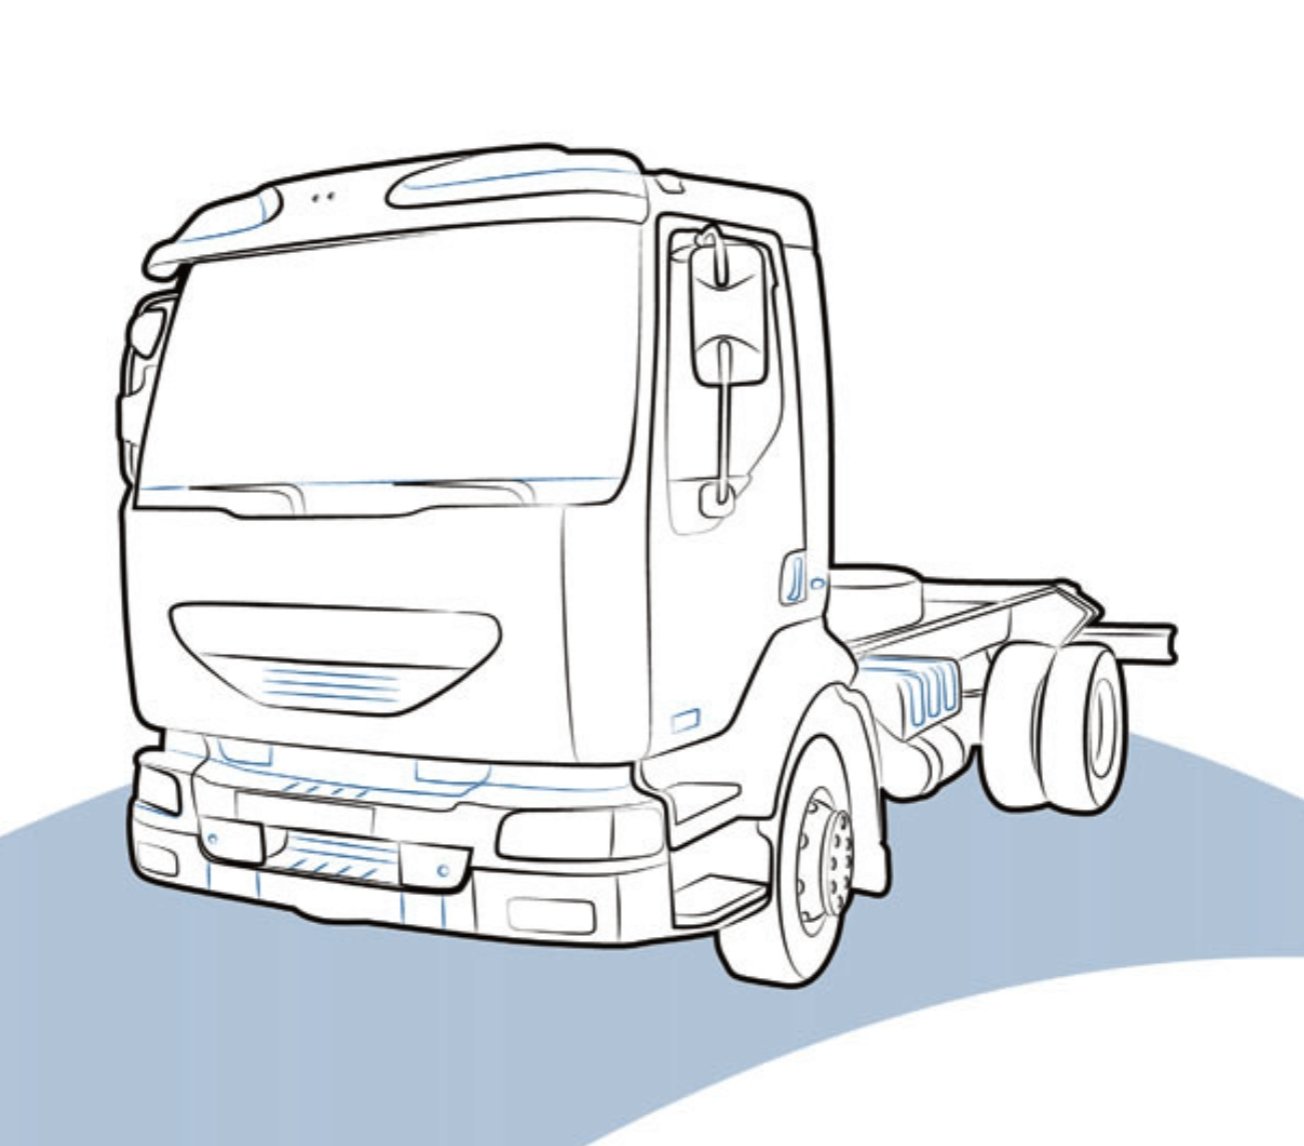 PLASTICA FANALE POSTERIORE RENAULT MIDLUM - 5001847153 - Carrozzeria Truck